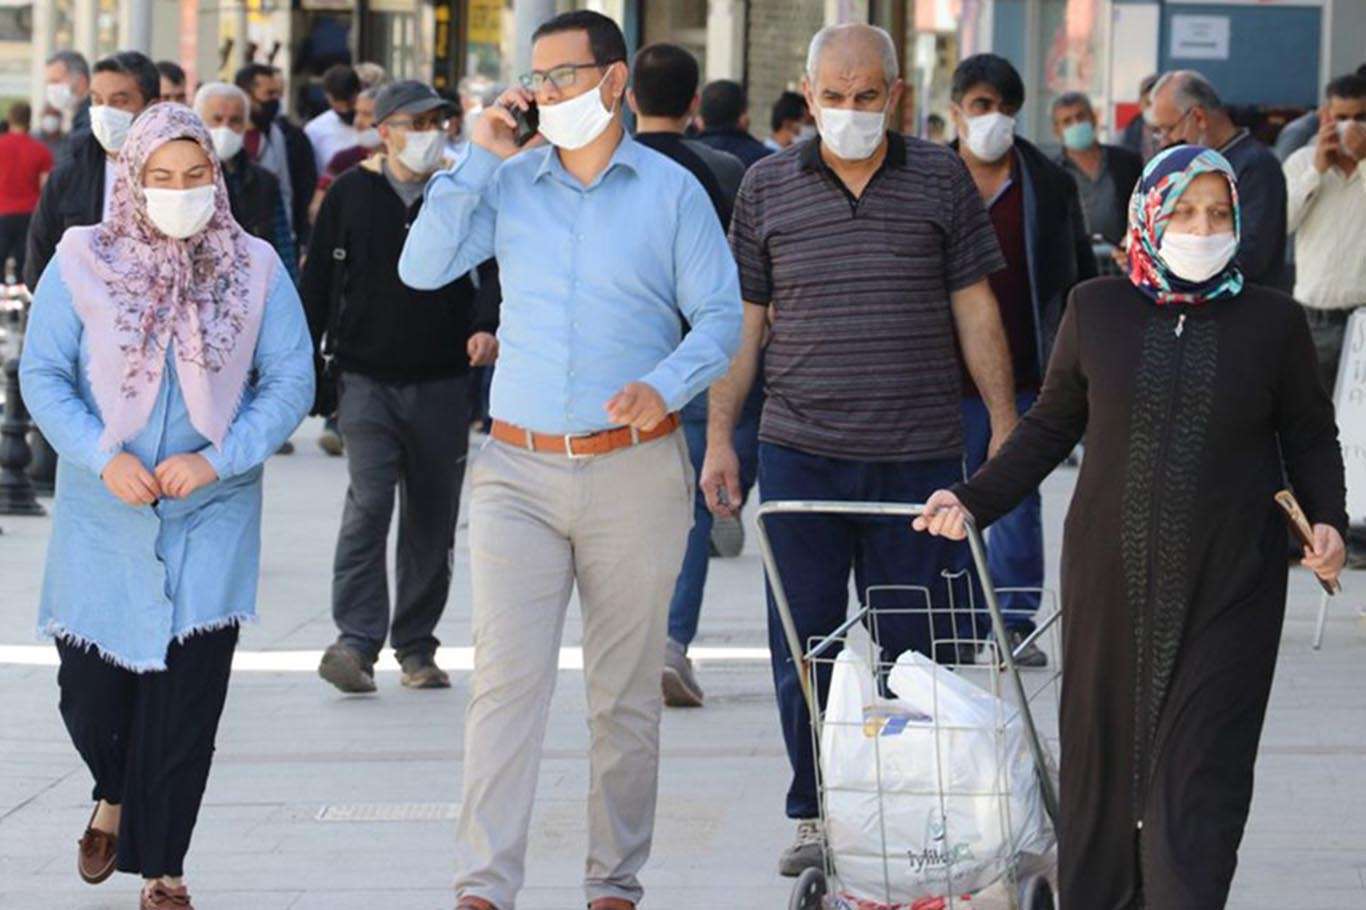 Ankara'da koronavirüs önlemleri kapsamında yeni kararlar alındı